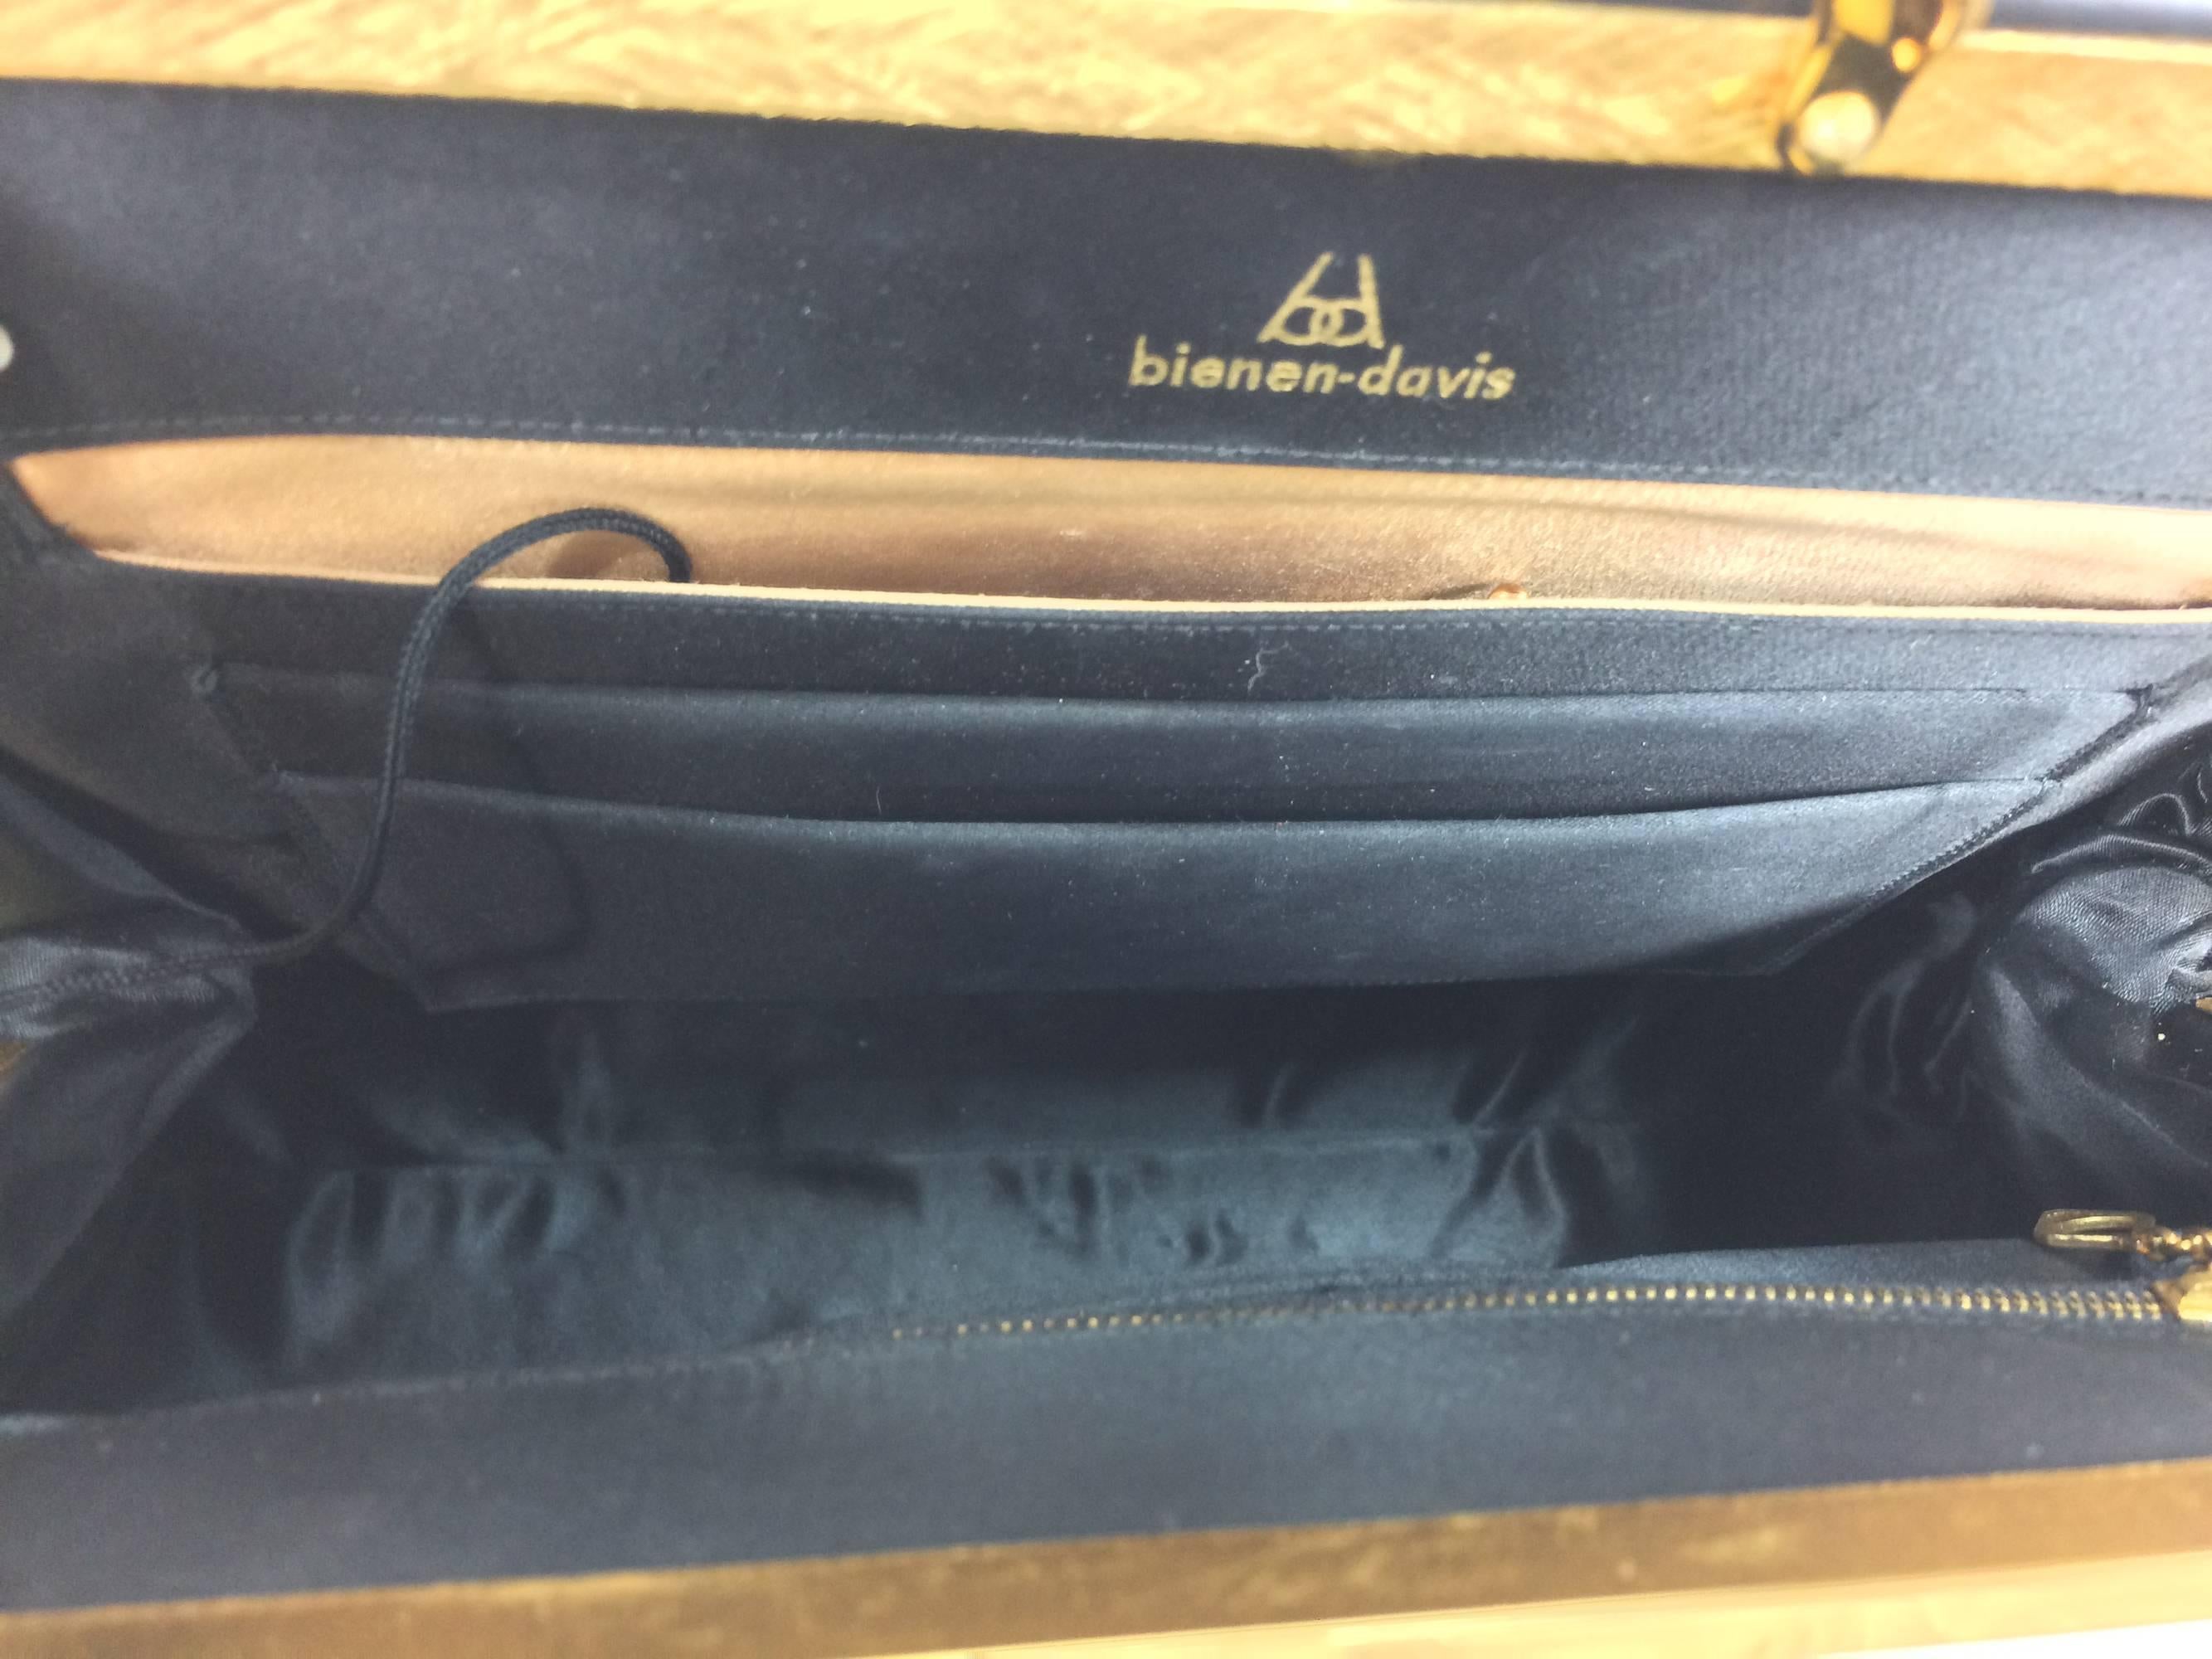 Bienen-Davis black box calf structured handbag with gold hardware 1950s 1